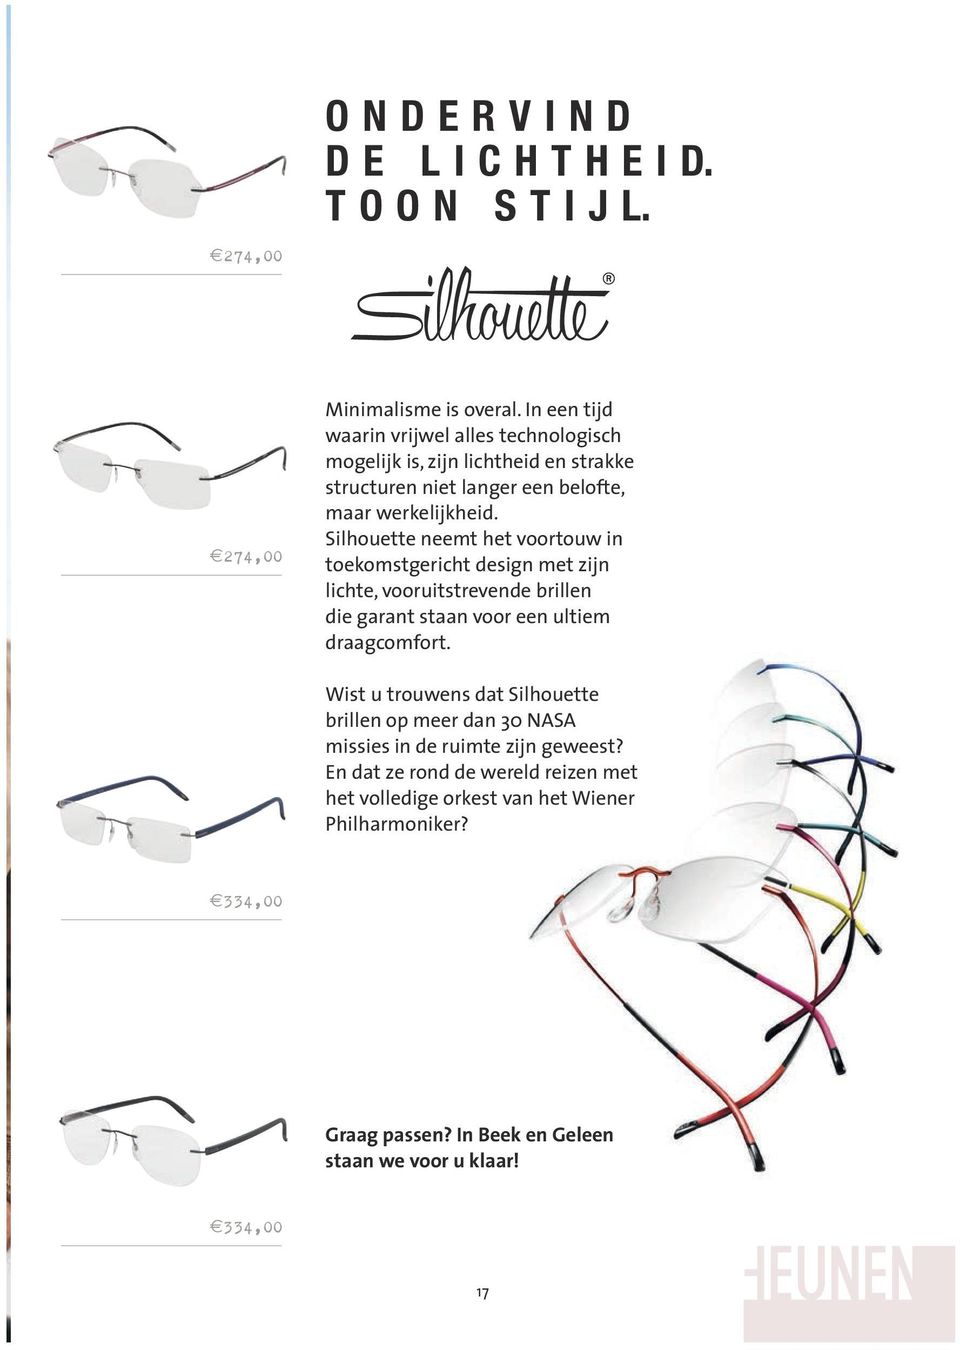 Silhouette neemt het voortouw in toekomstgericht design met zijn lichte, vooruitstrevende brillen die garant staan voor een ultiem draagcomfort.